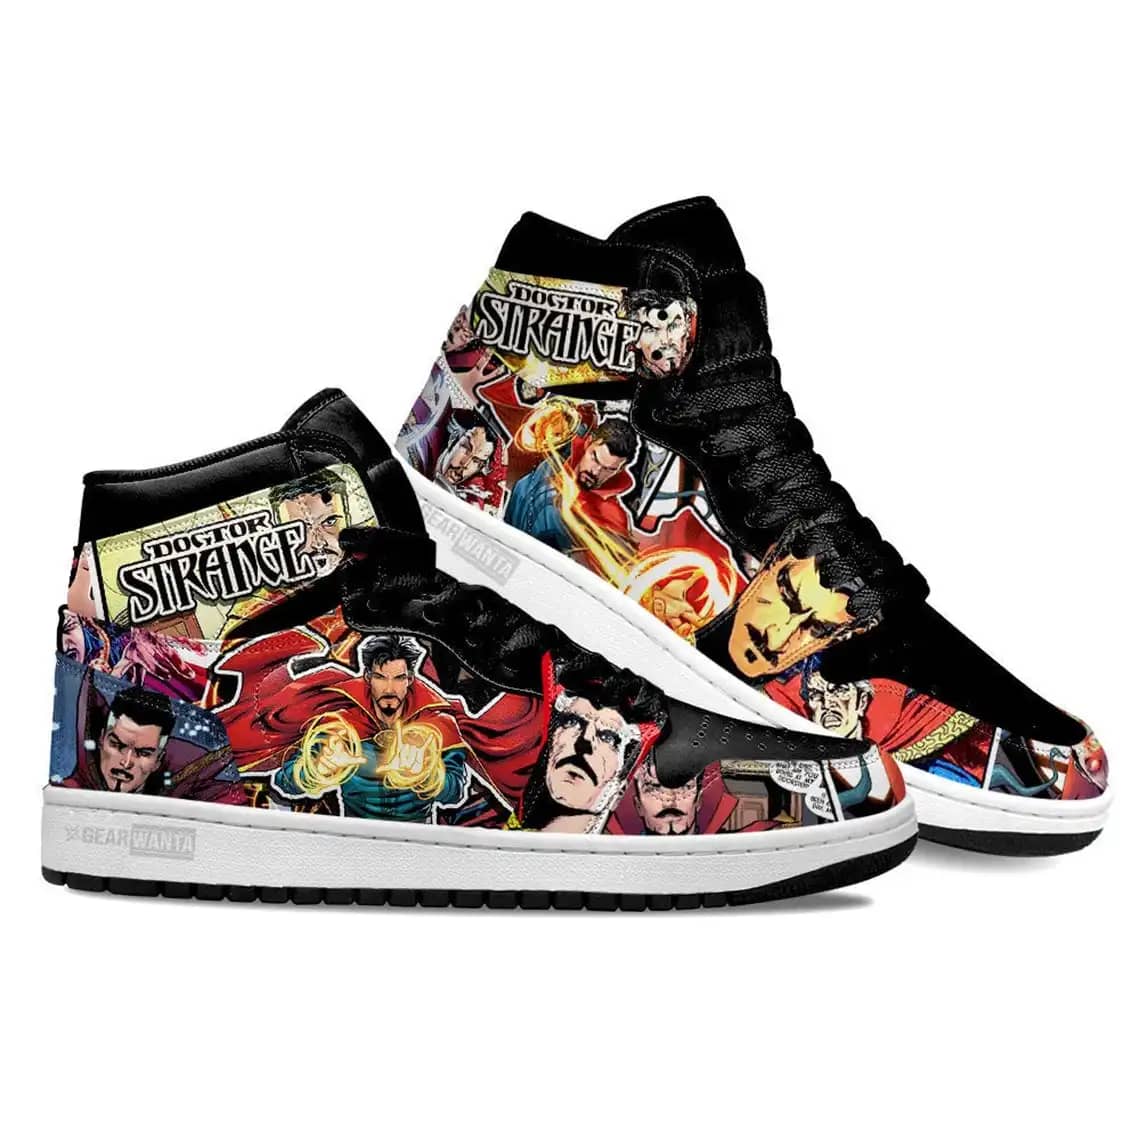 Avenger Dr Strange Super Heroes For Movie Fans - Custom Anime Sneaker For Men And Women Air Jordan Shoes